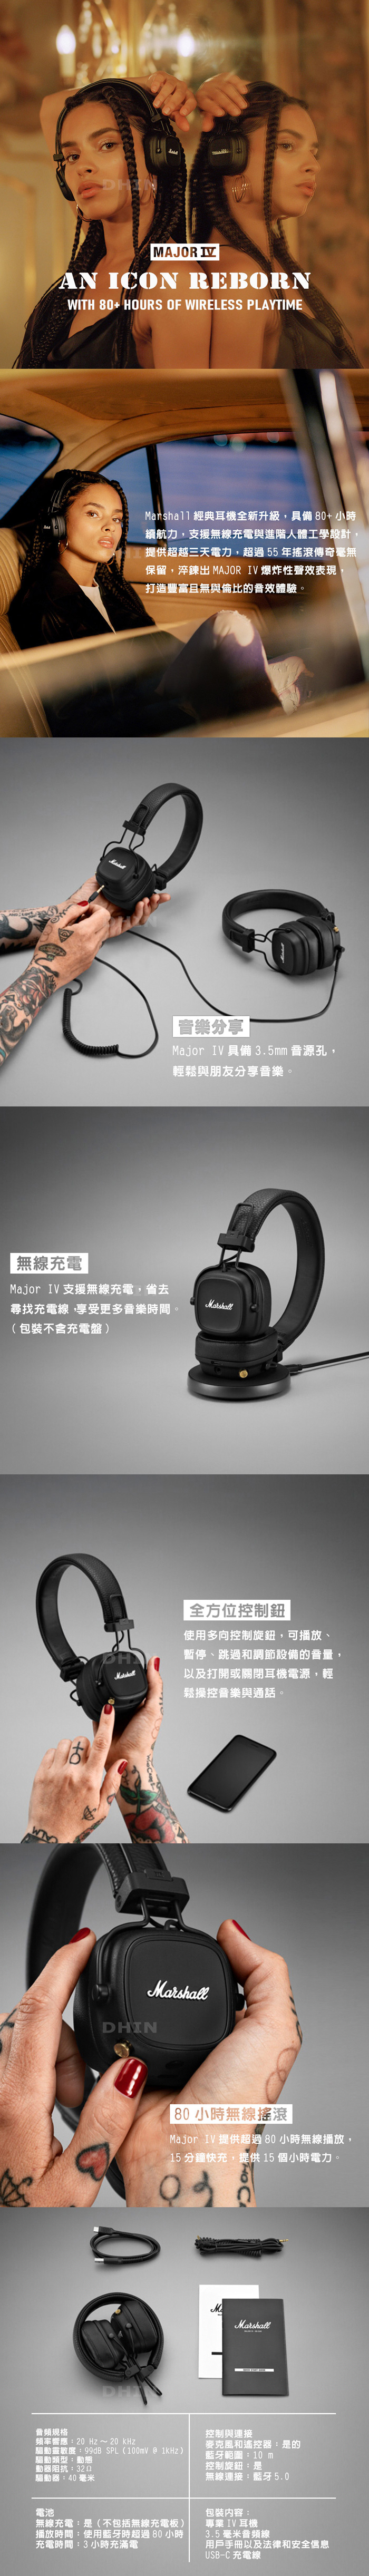 【Marshall】Major IV 藍牙耳罩式耳機 台灣公司貨